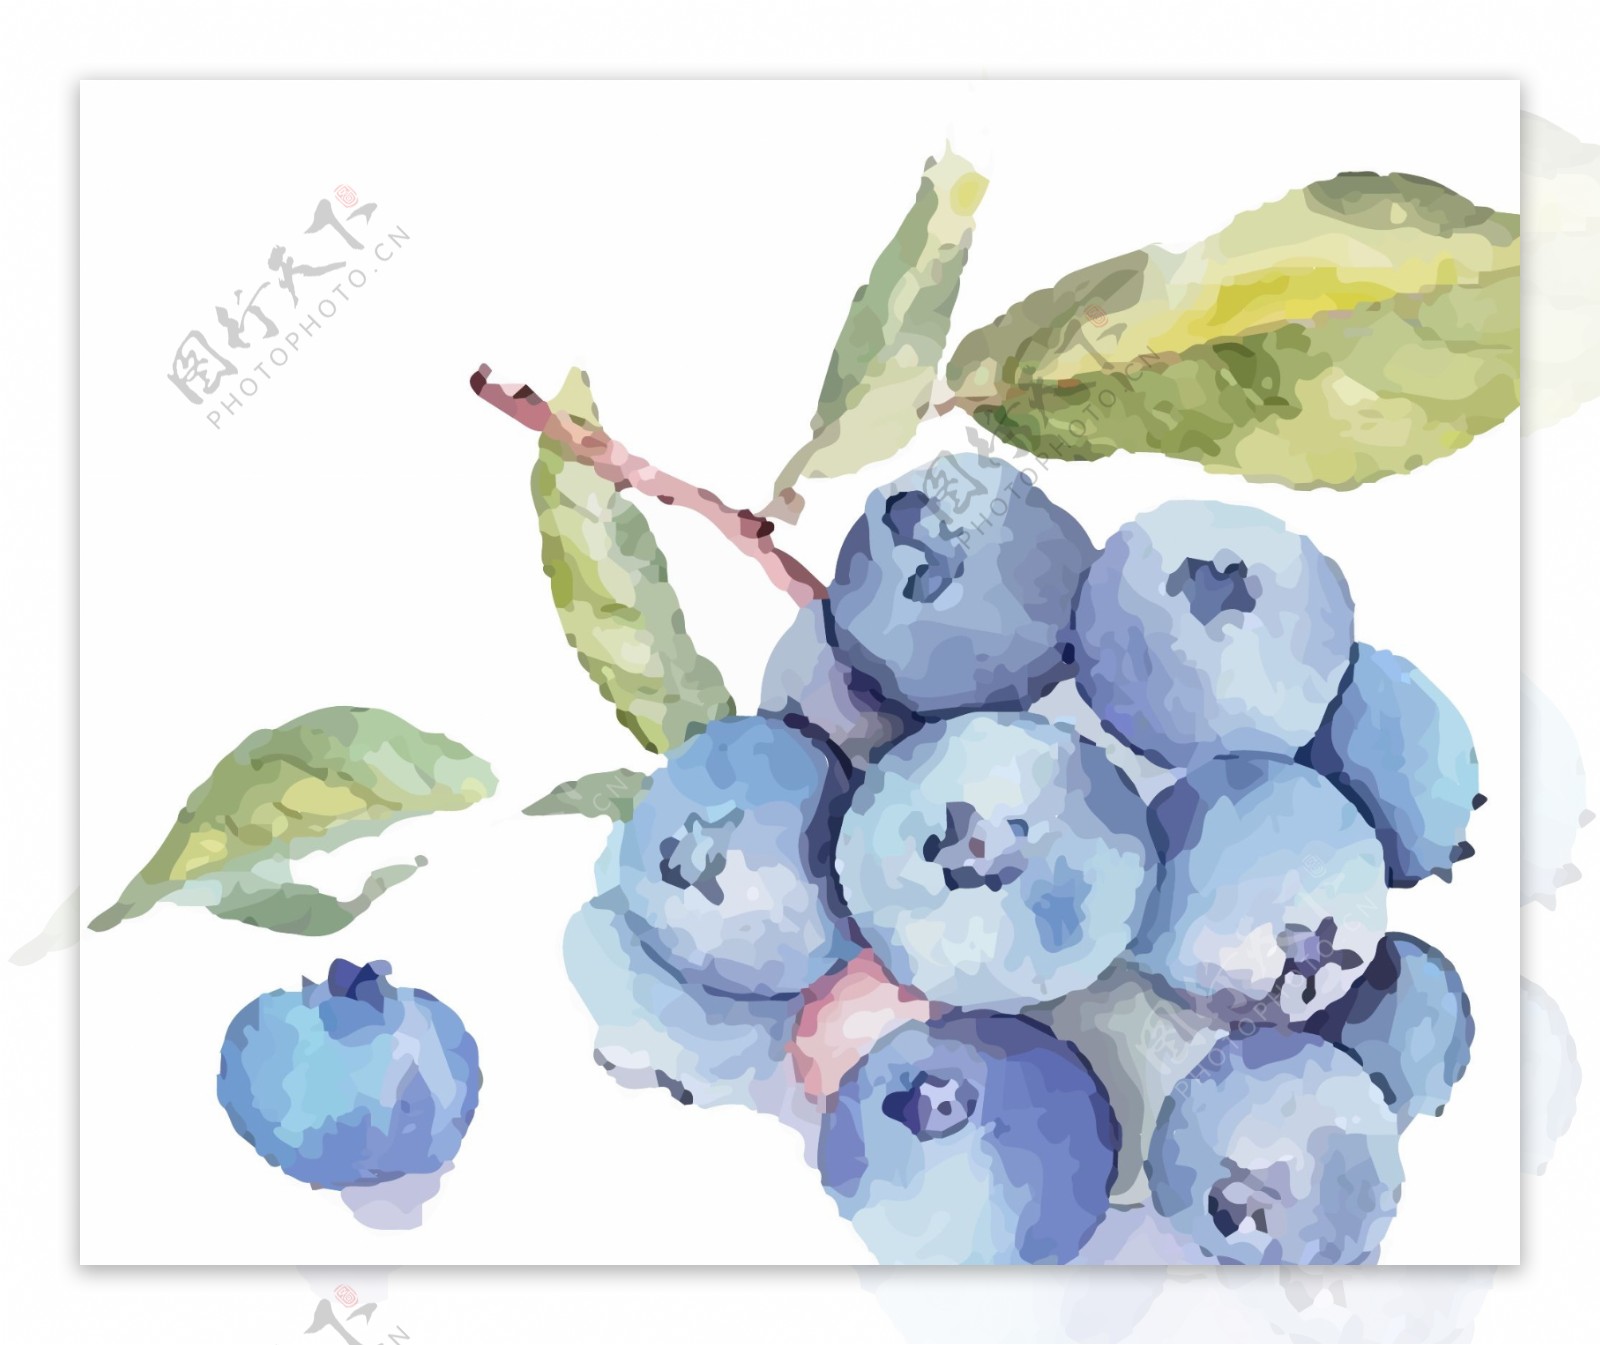 原创手绘彩绘一束蓝莓插画图